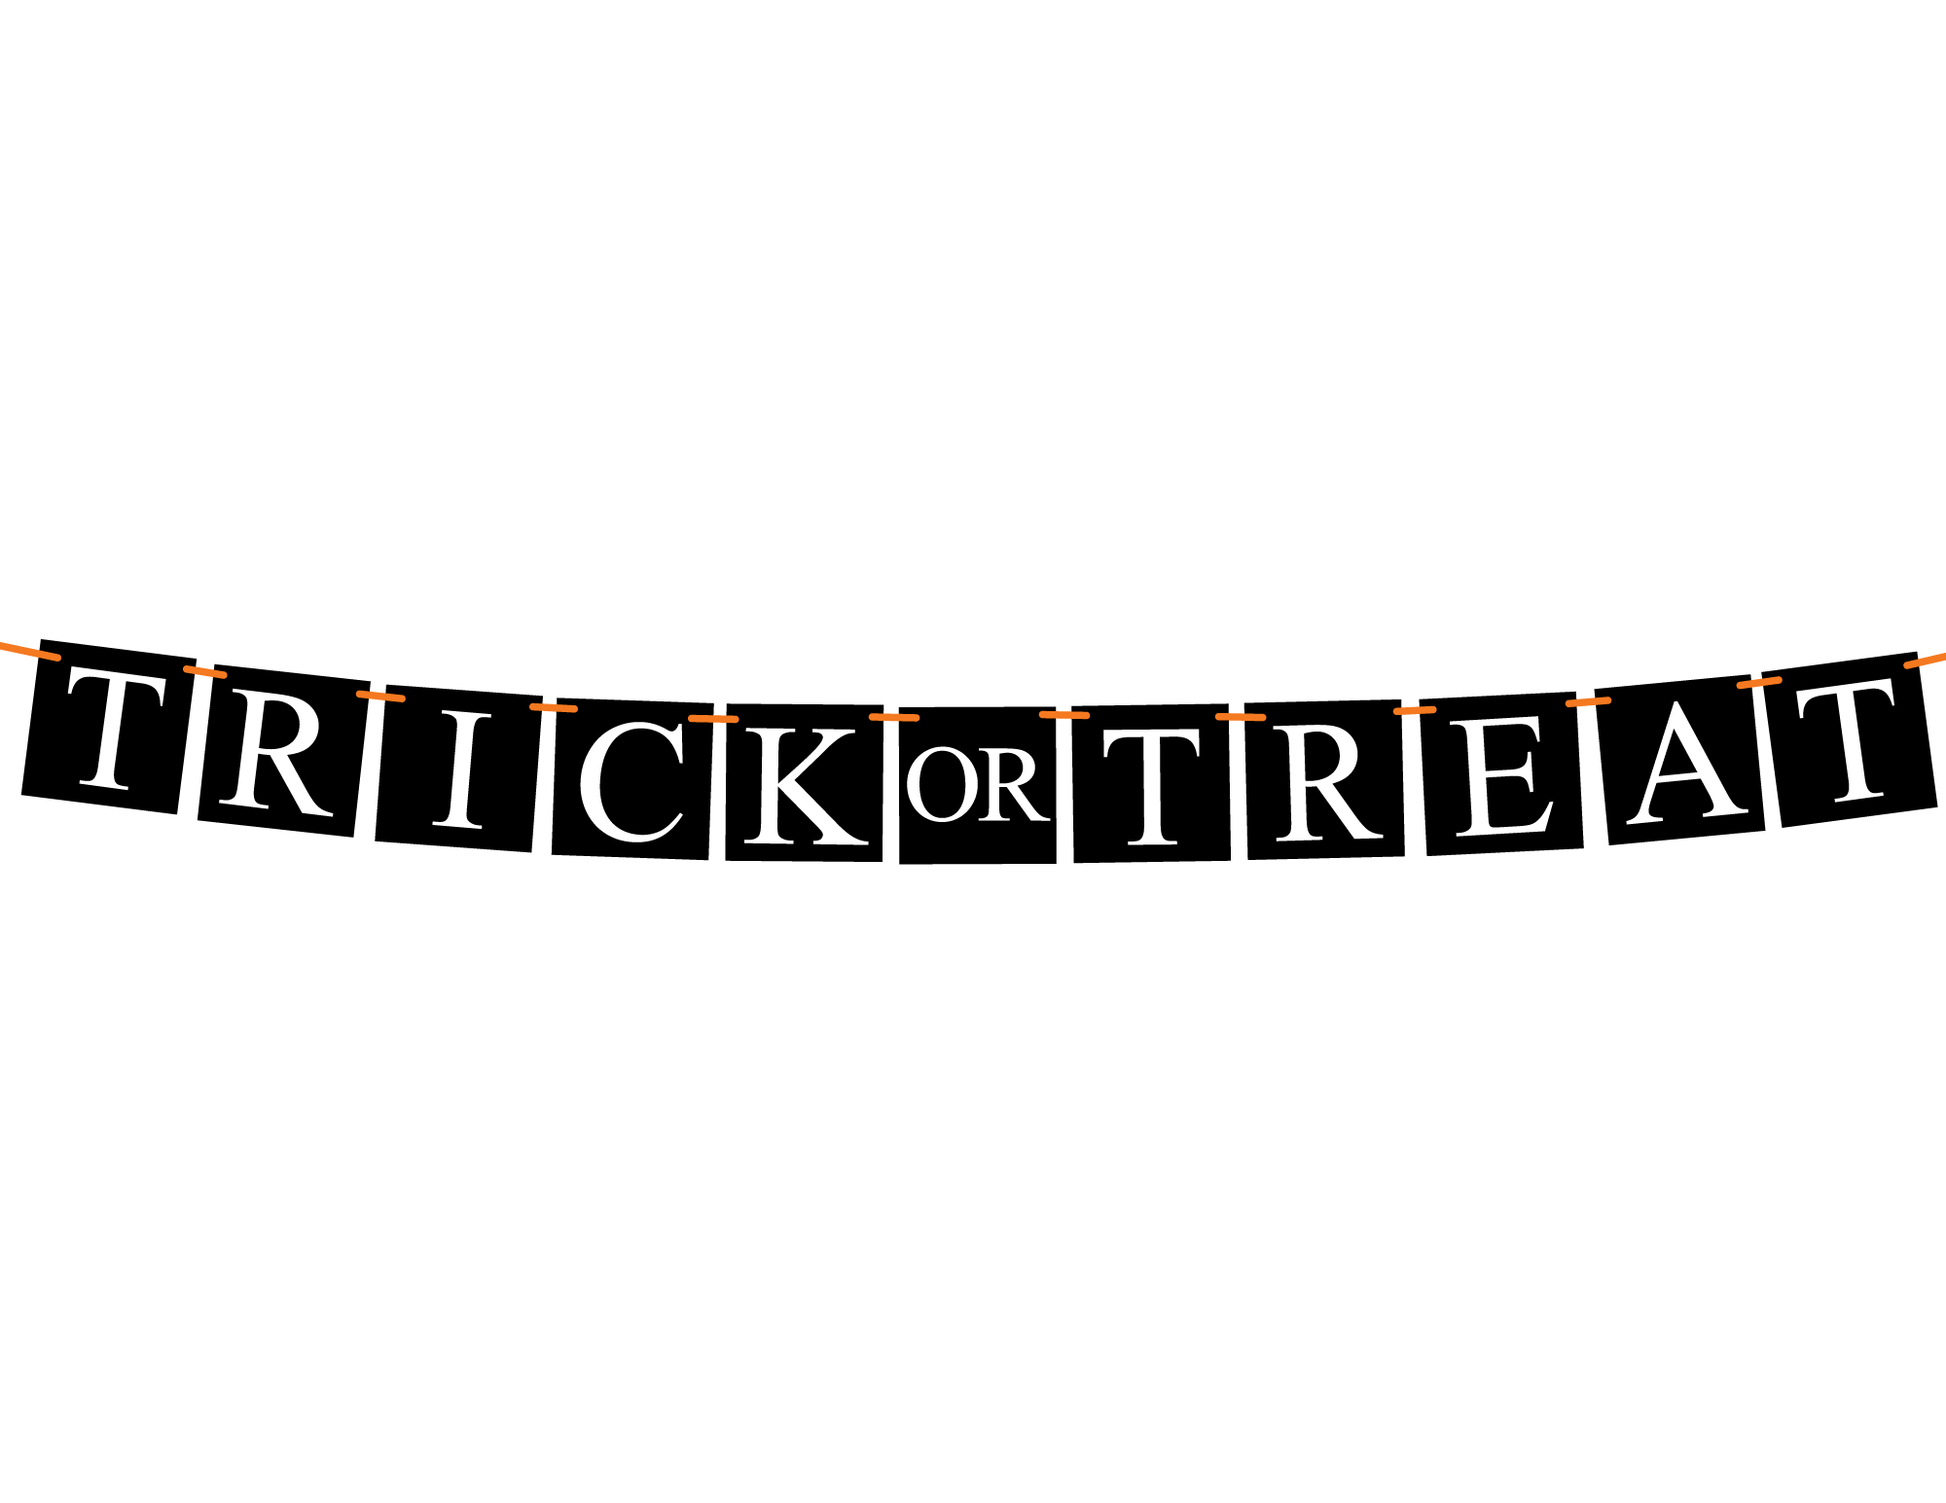 DIY trick or treat banner - Celebrating Together